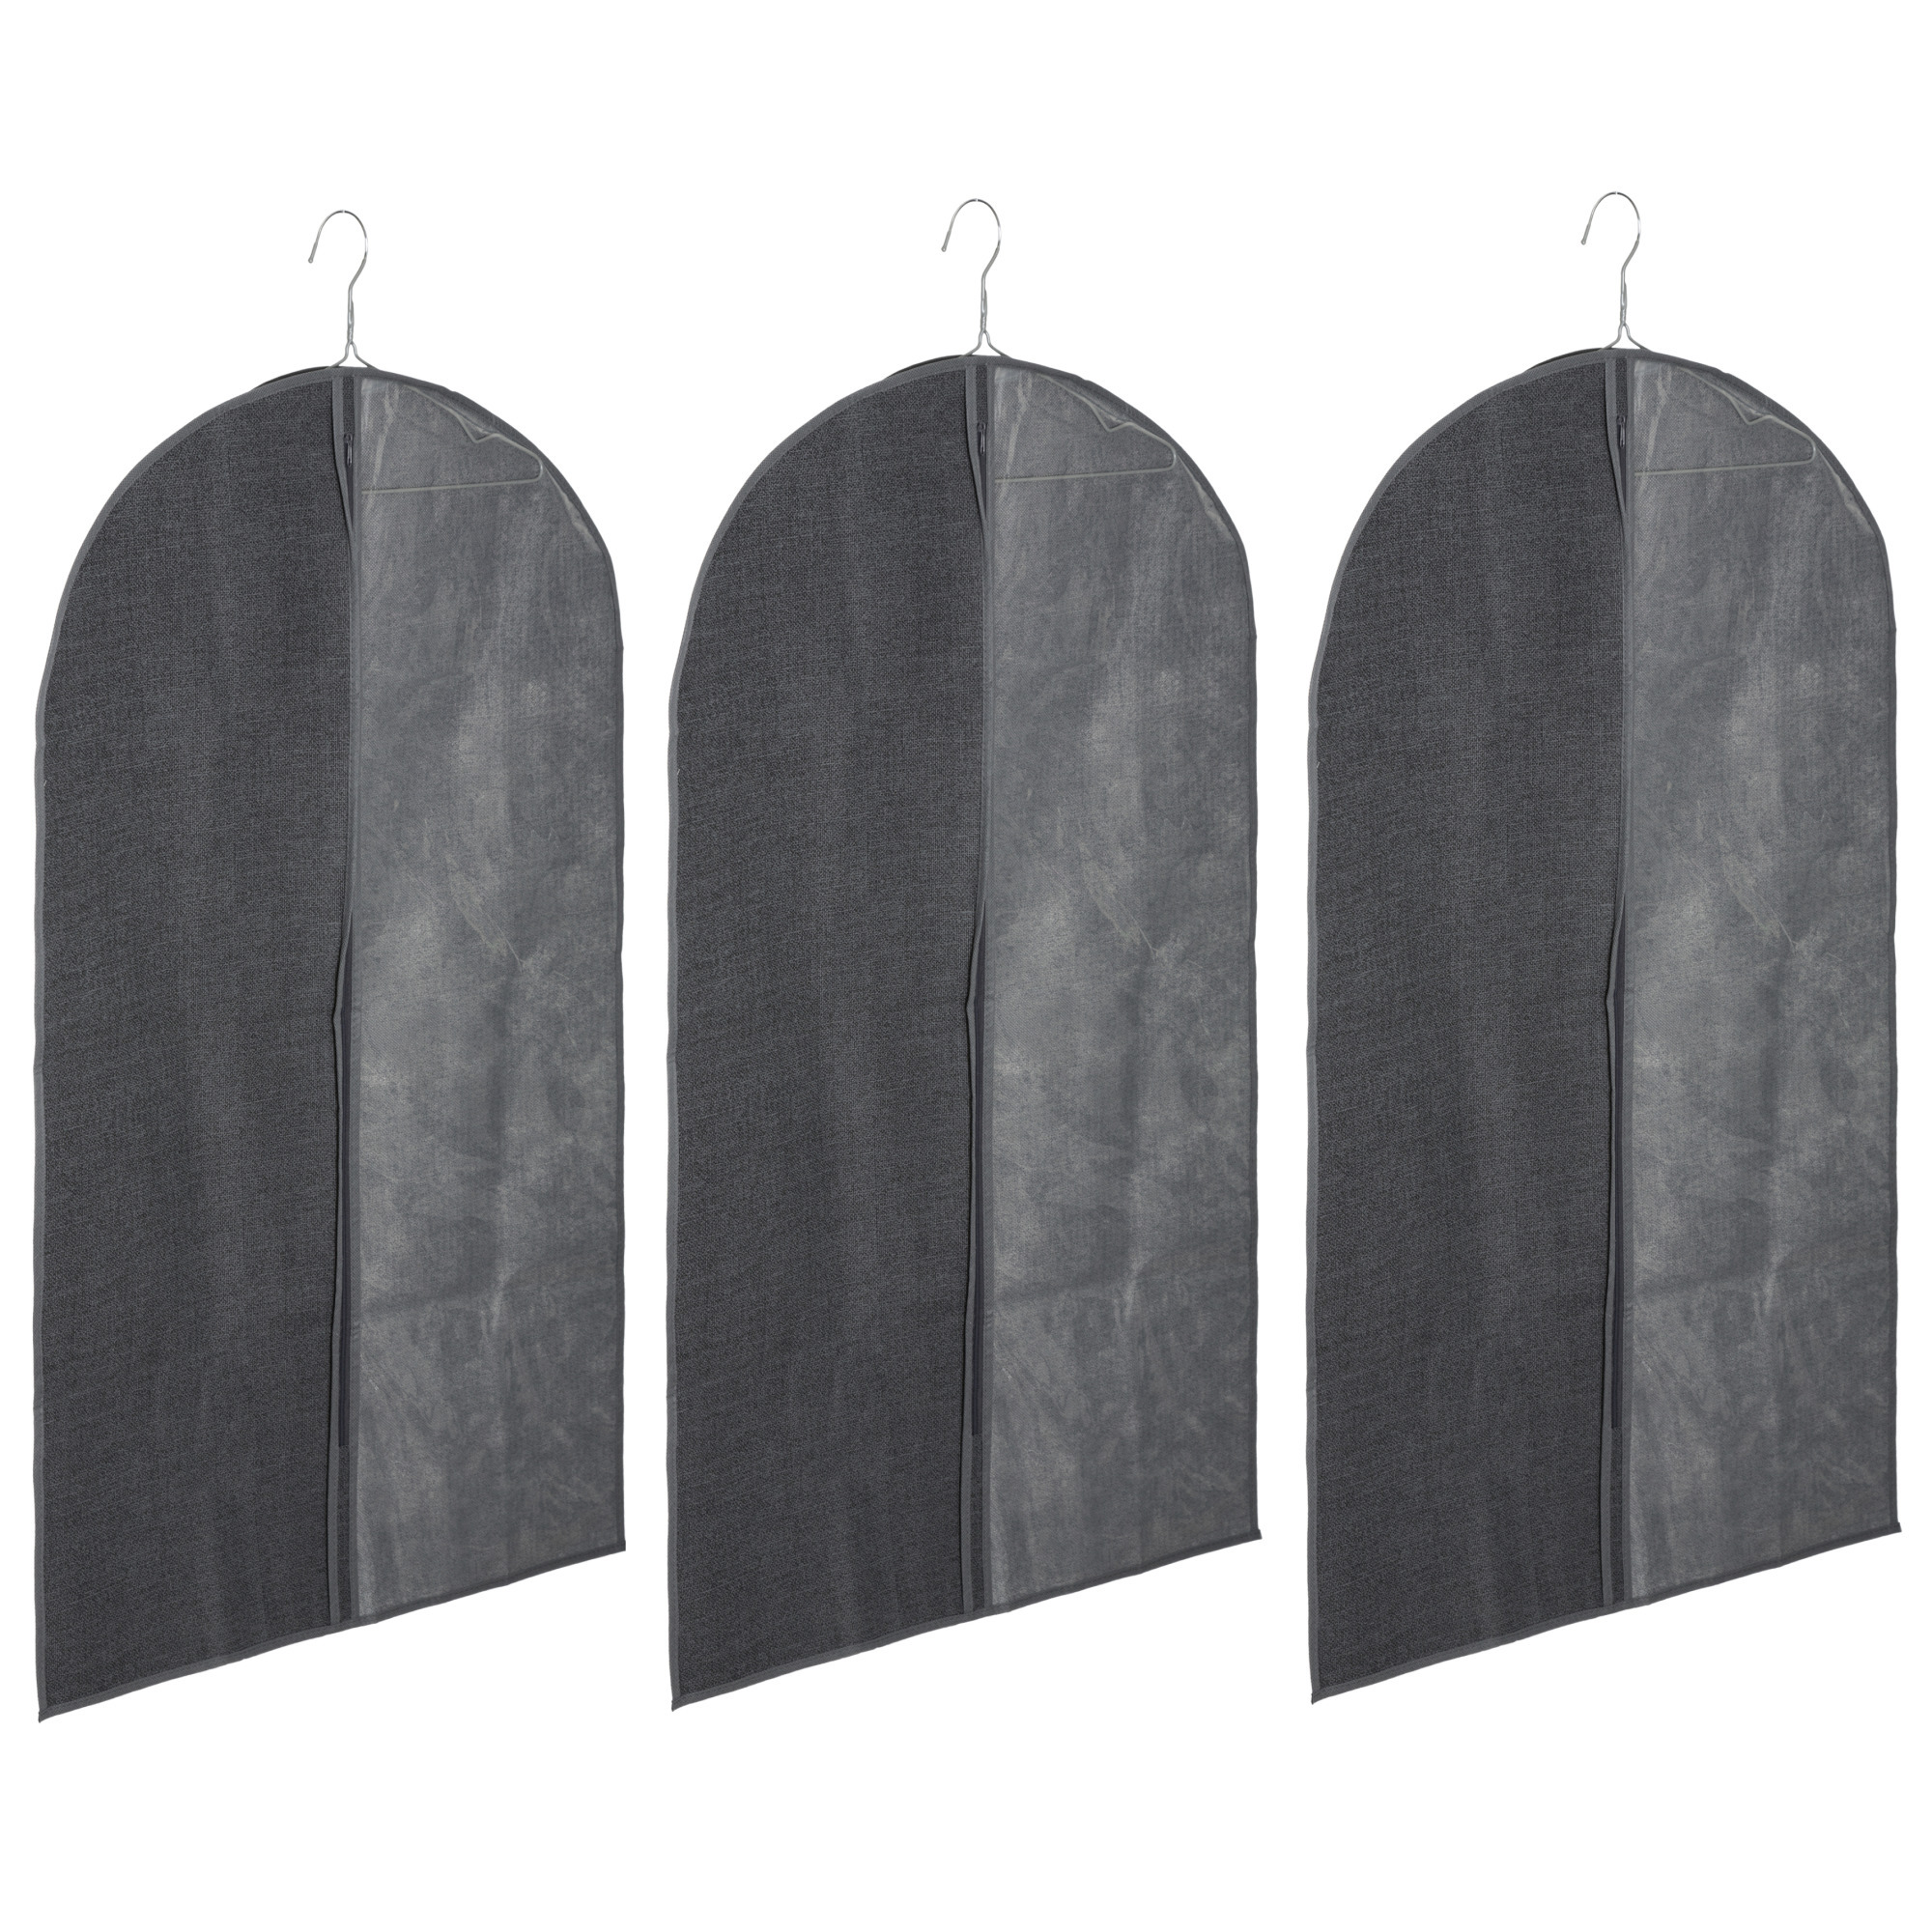 Set van 5x stuks kleding-beschermhoes linnen grijs 100 cm inclusief kledinghangers